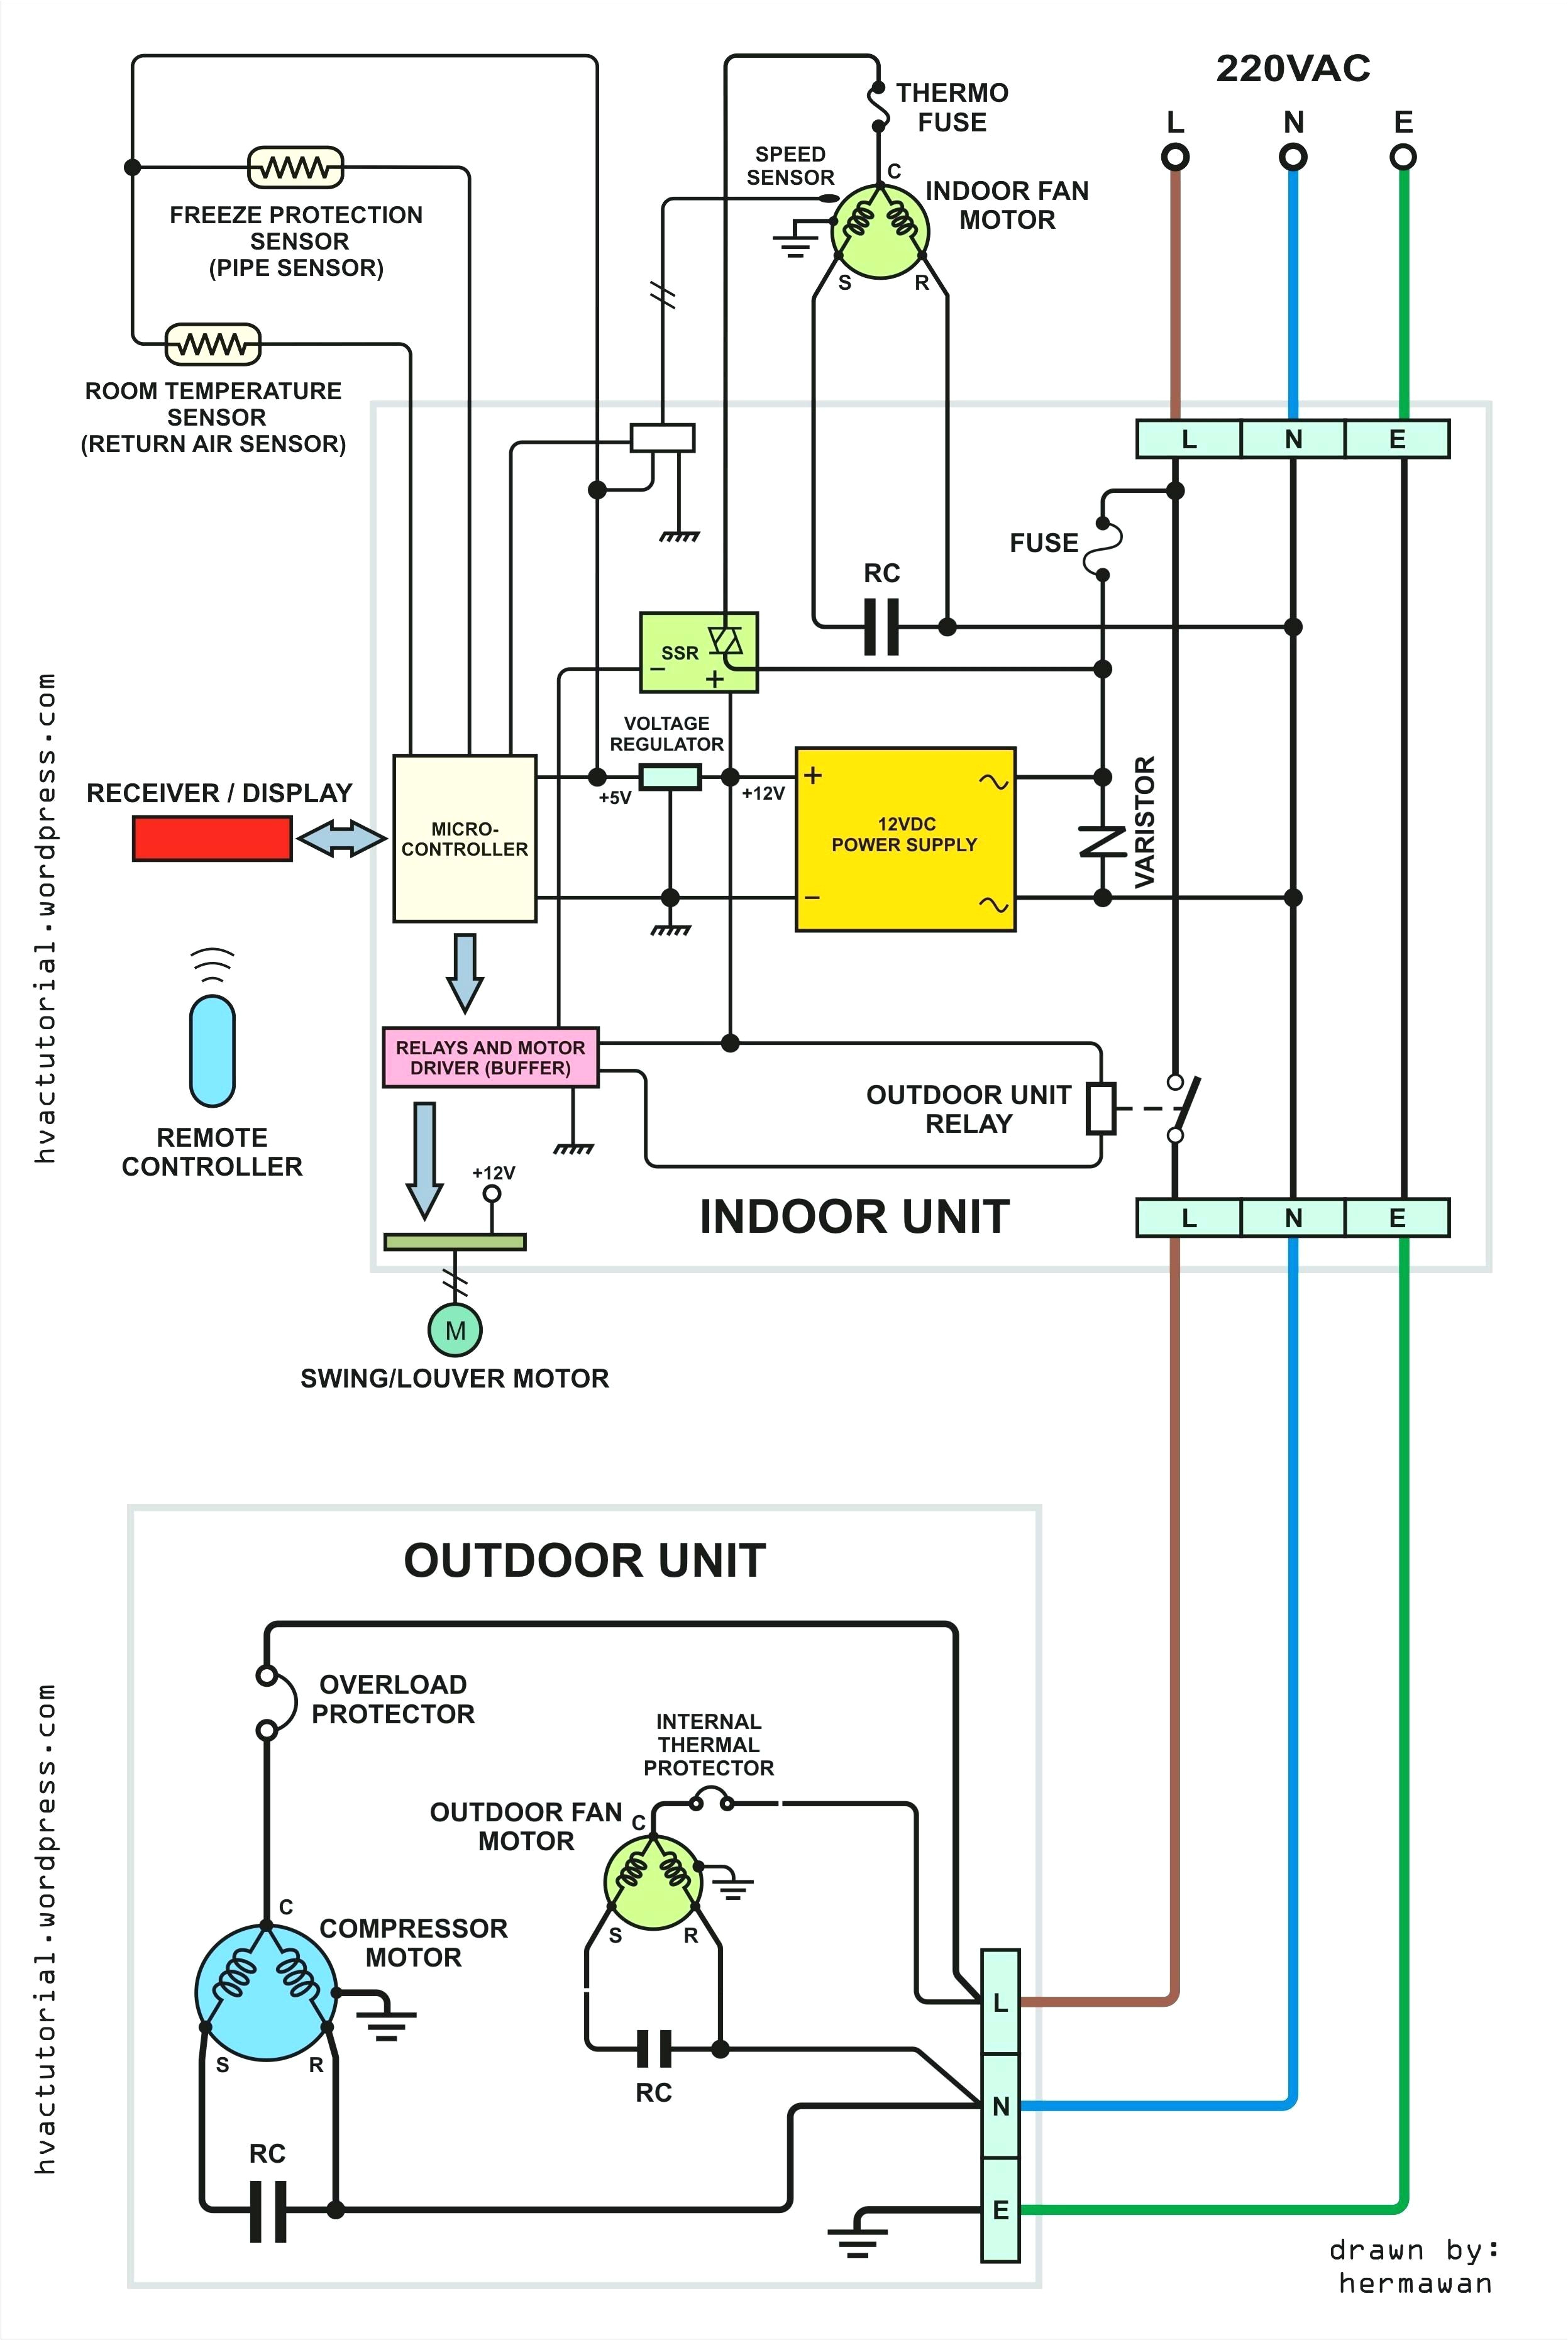 ac condenser wiring diagram wiring diagram article ac condenser contactor wiring diagram ac condenser wiring diagram